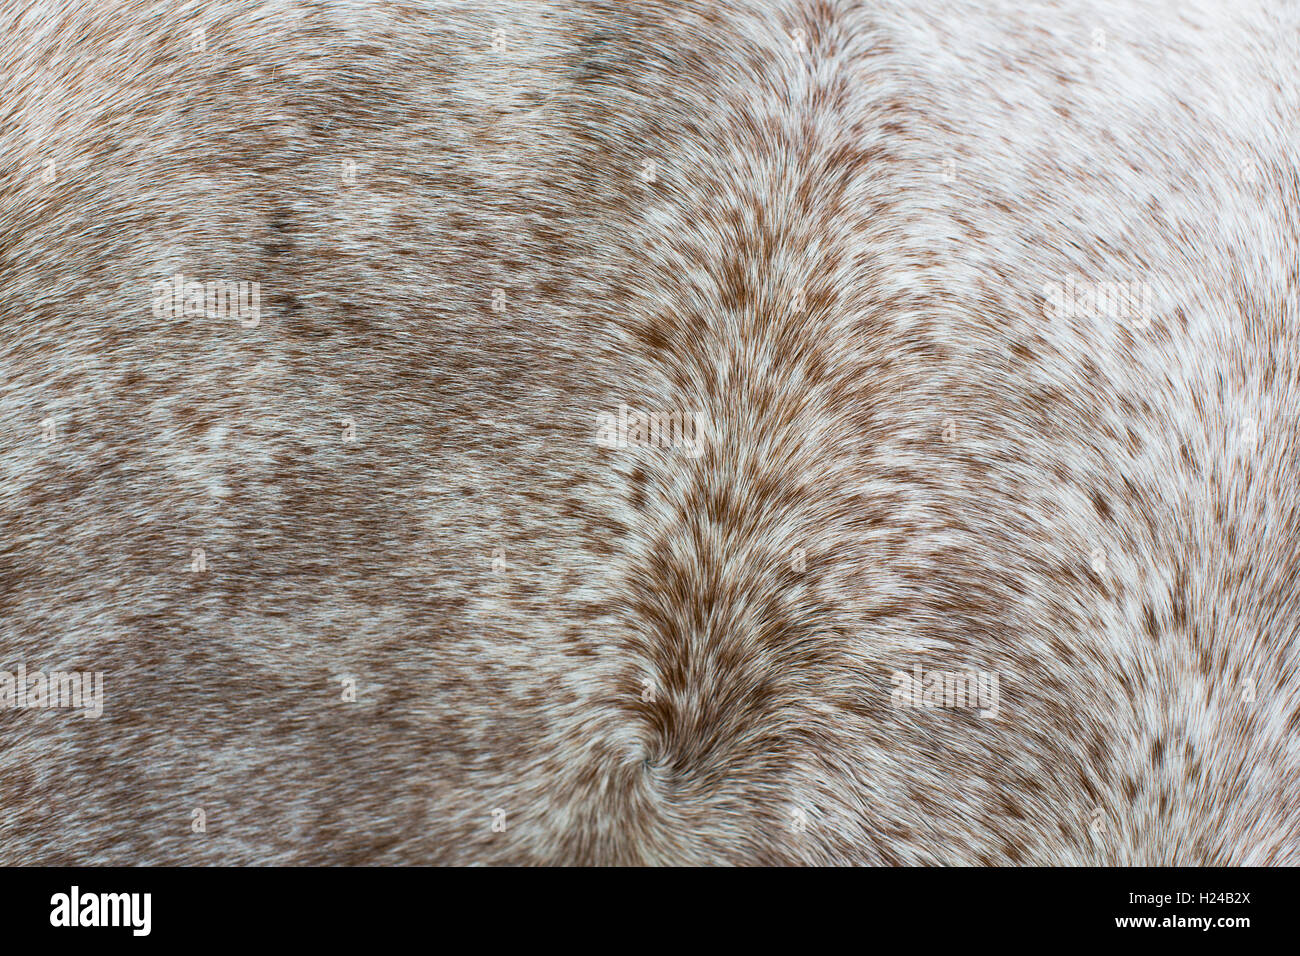 Detail von einem Pferde Mantel Shwoing die Haare Wirbeln über den Körper in Muster, gesprenkelt braun weiss und grau. Stockfoto